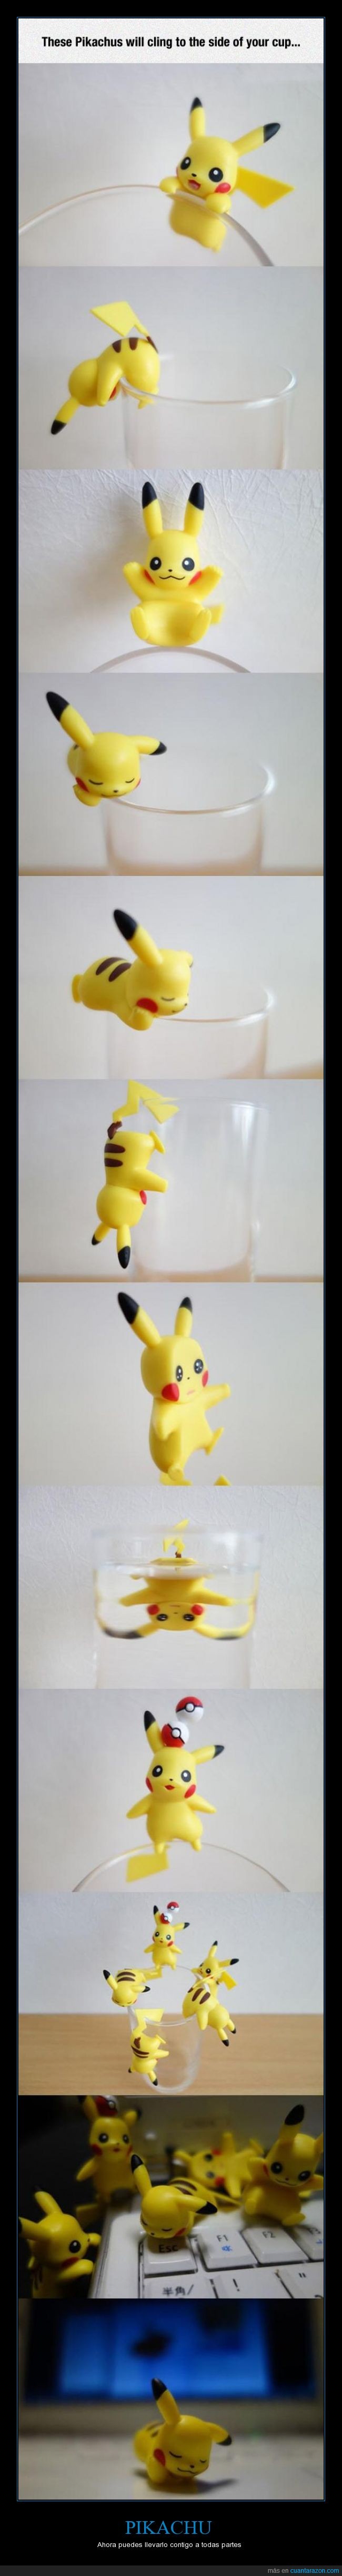 pc,pequeño,pikachu,vaso